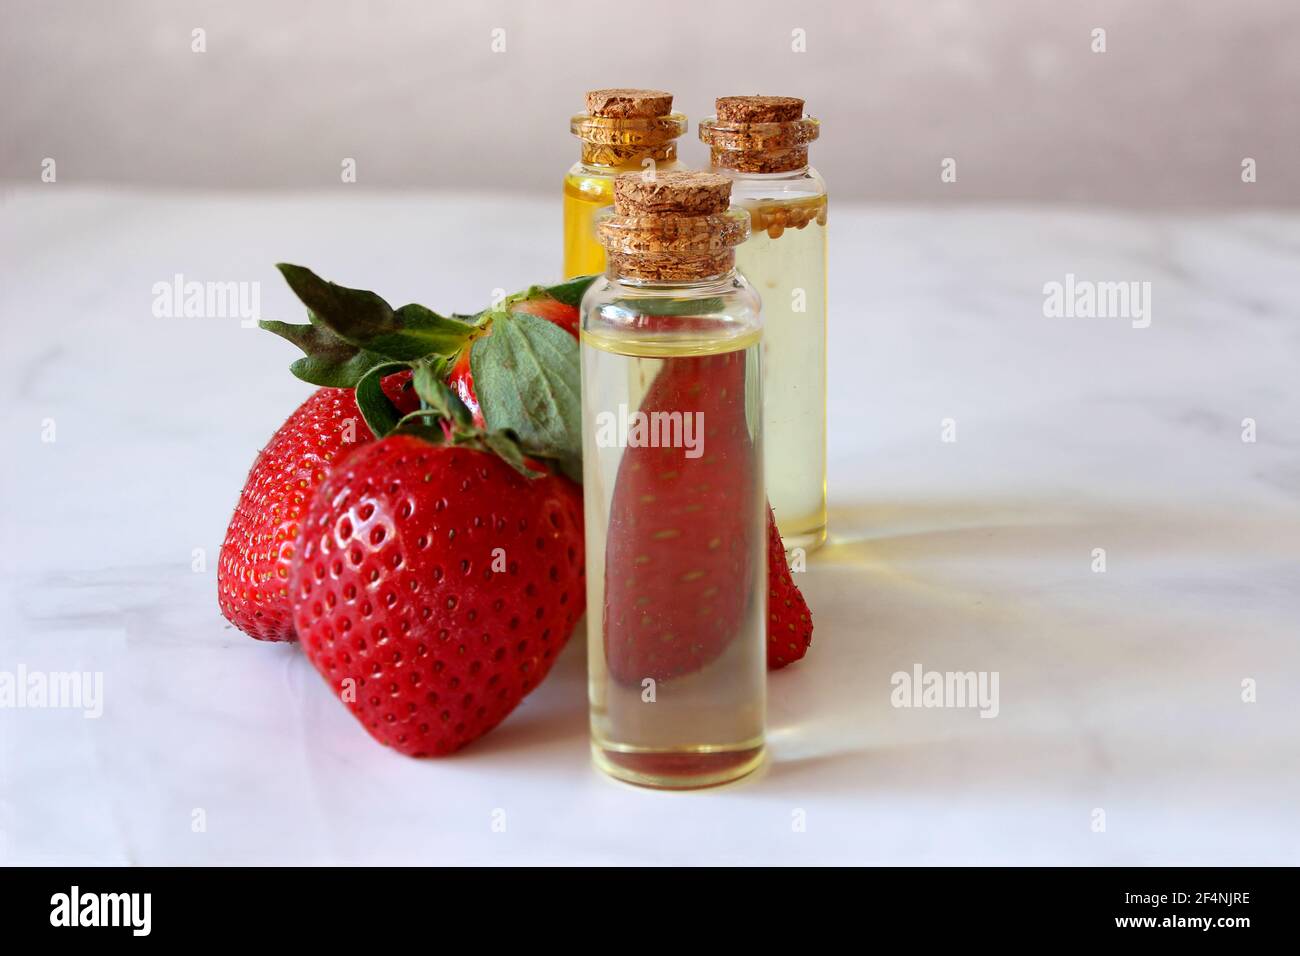 potenciador de aroma y sabor junto a fresas maduras, sobre fondo claro. Foto de stock